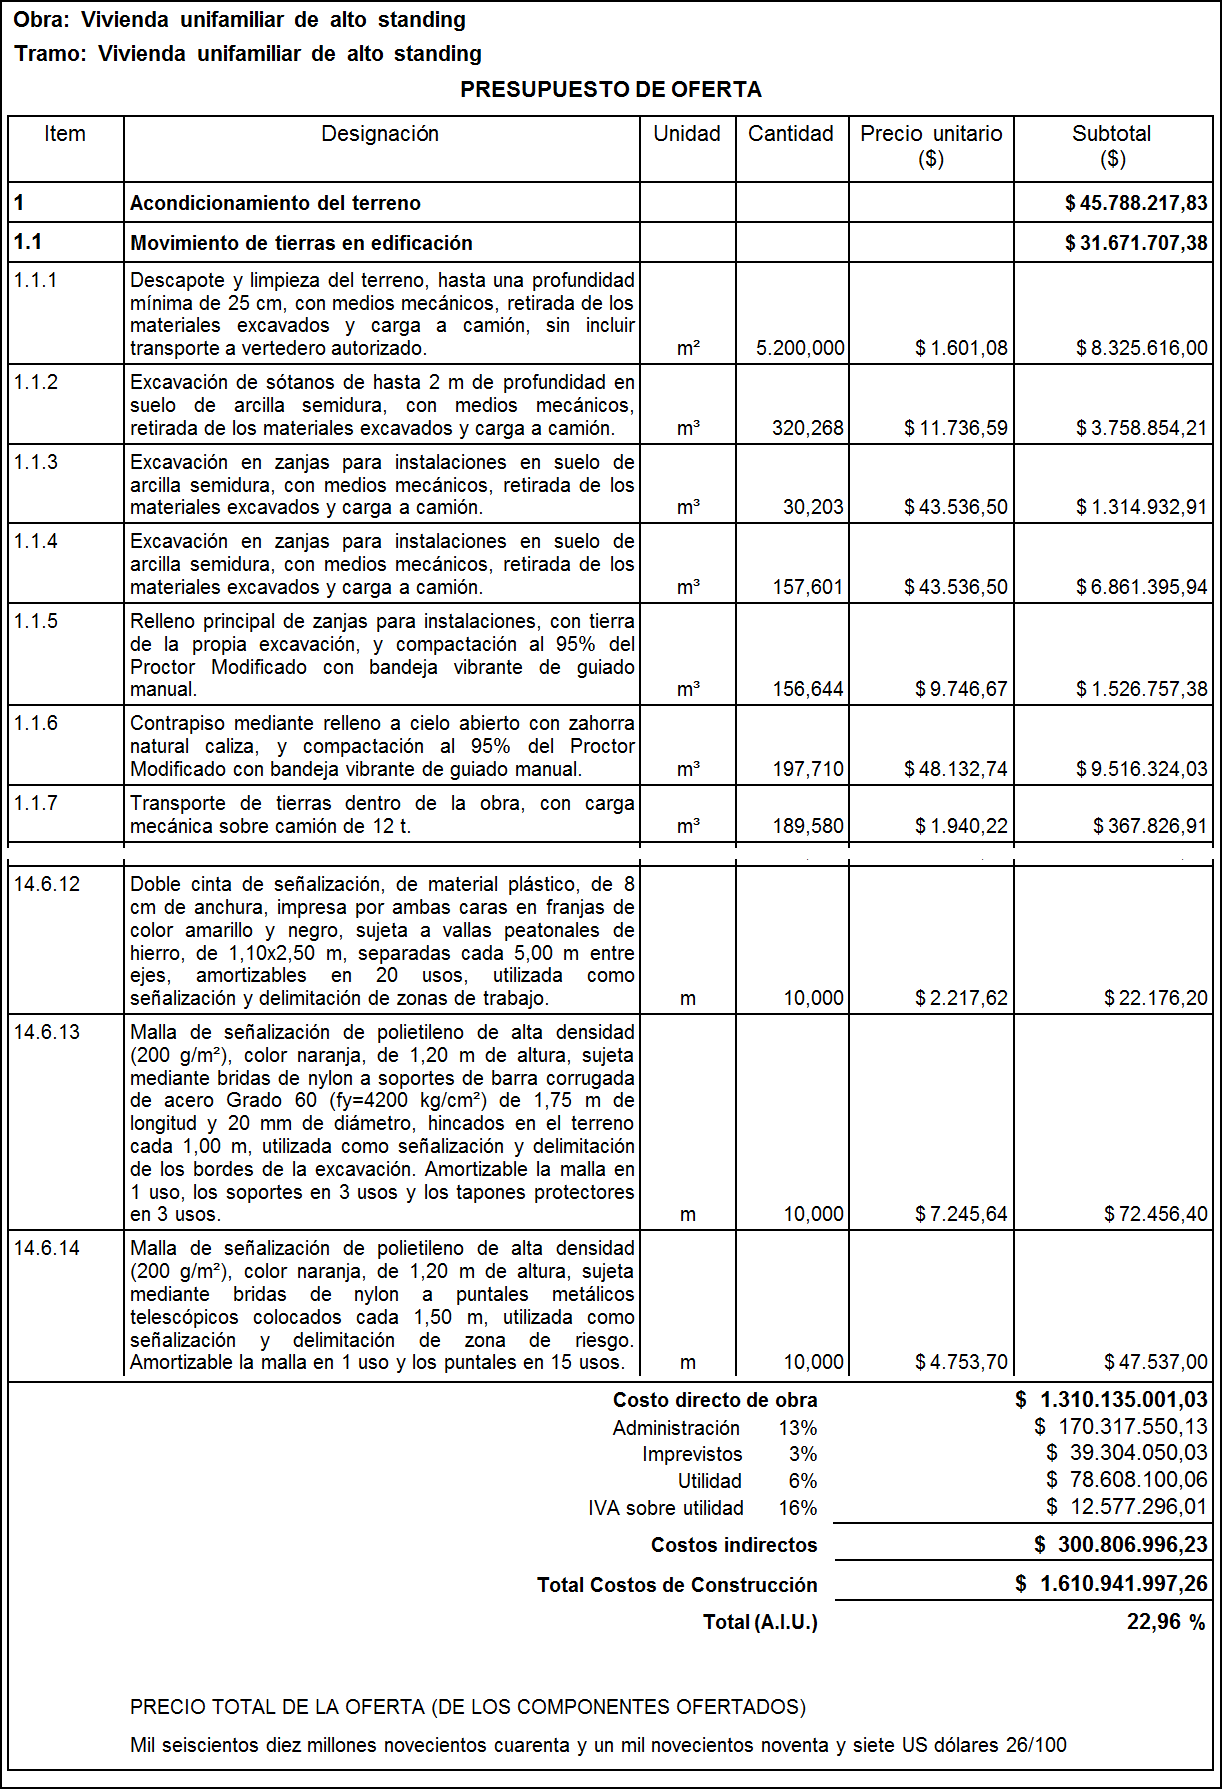 Arquímedes. Listado "Propuesta (Presupuesto de oferta)" para Colombia